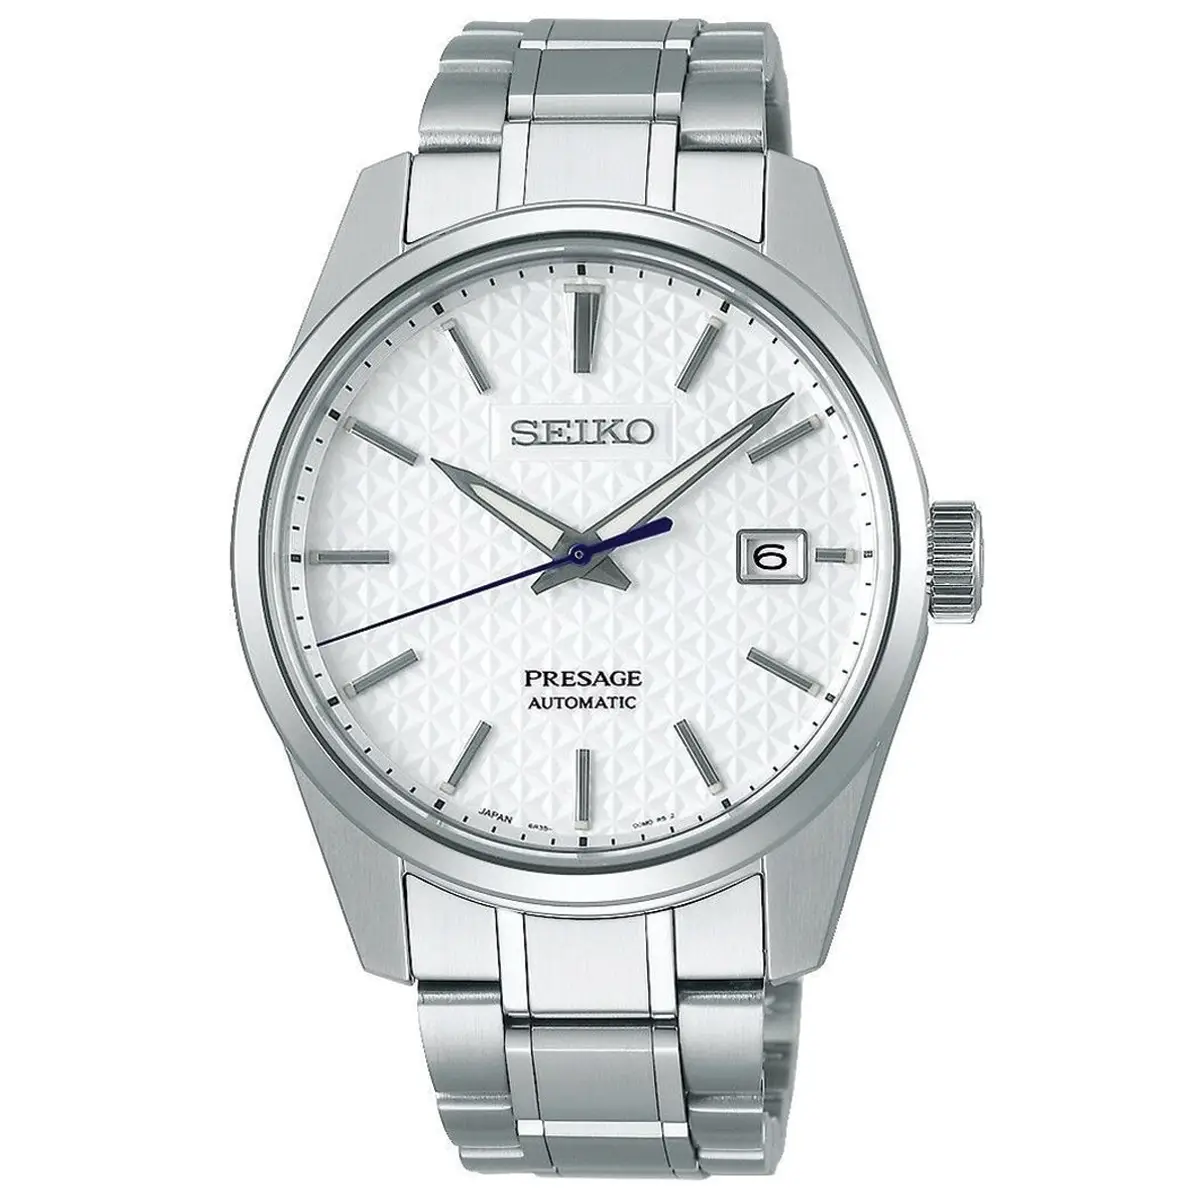 Đồng hồ Seiko Presage Sharp Edged SARX075 (SPB165J1) mặt số màu trắng. Dây đeo bằng thép. Thân vỏ bằng thép.